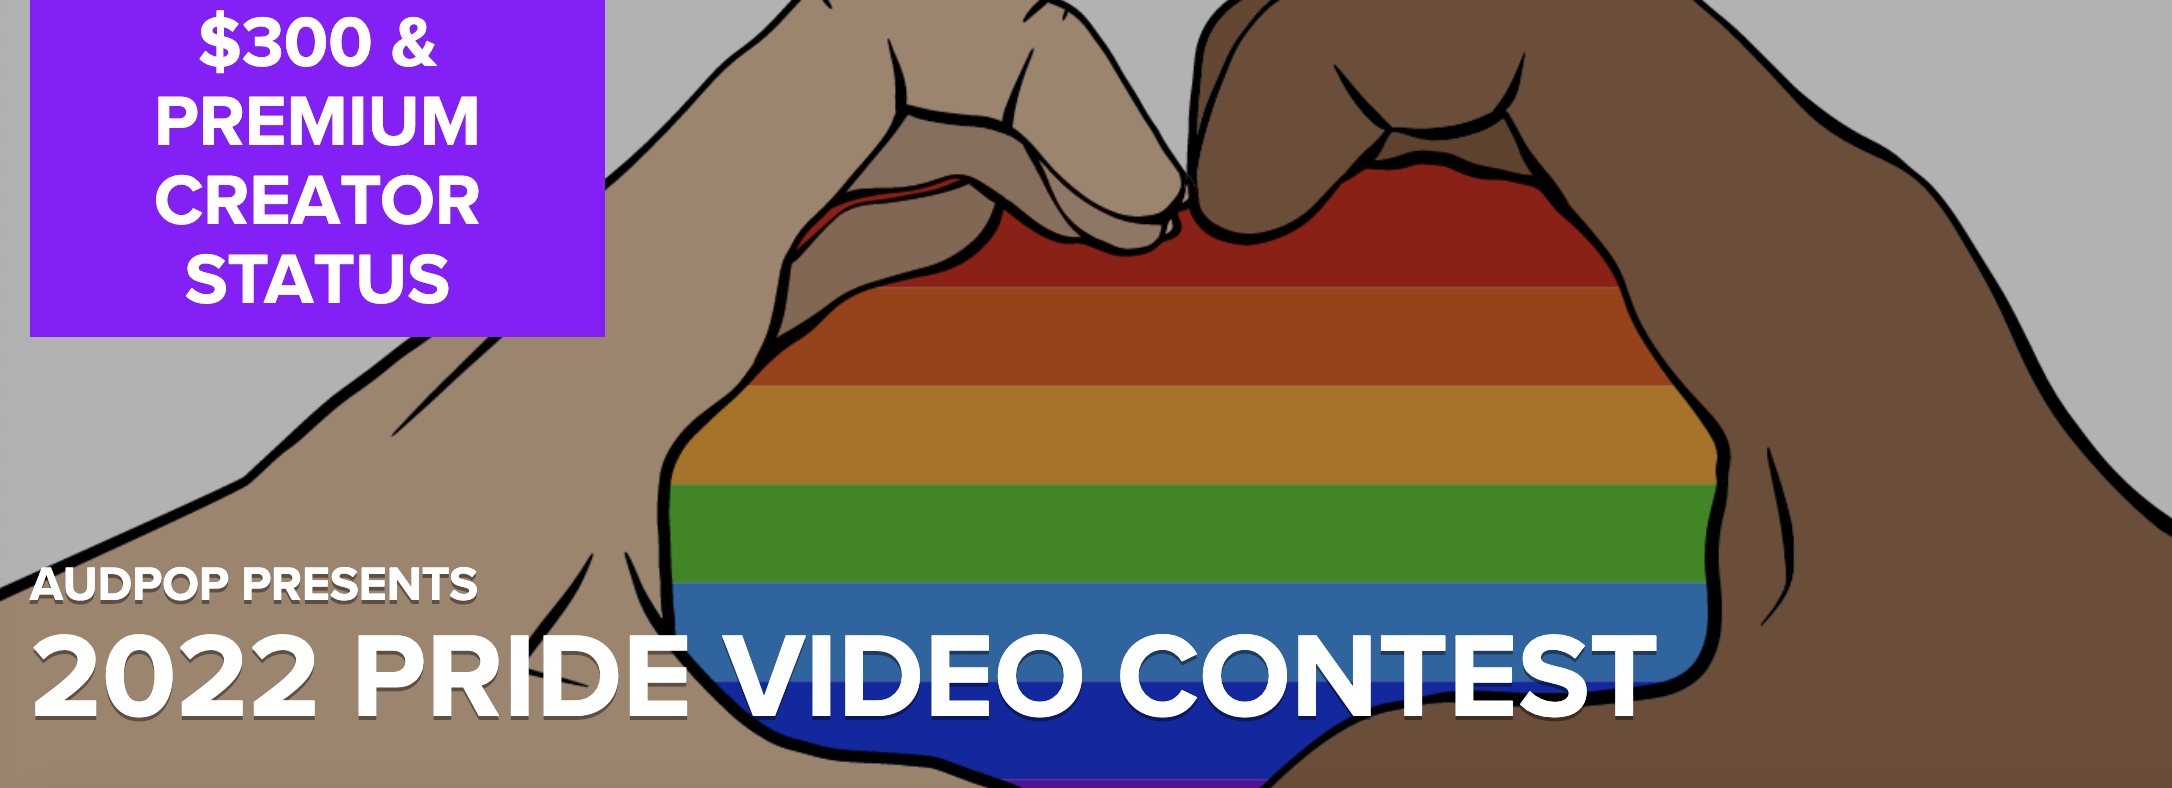 AudPop - 2022 Pride Video Contest